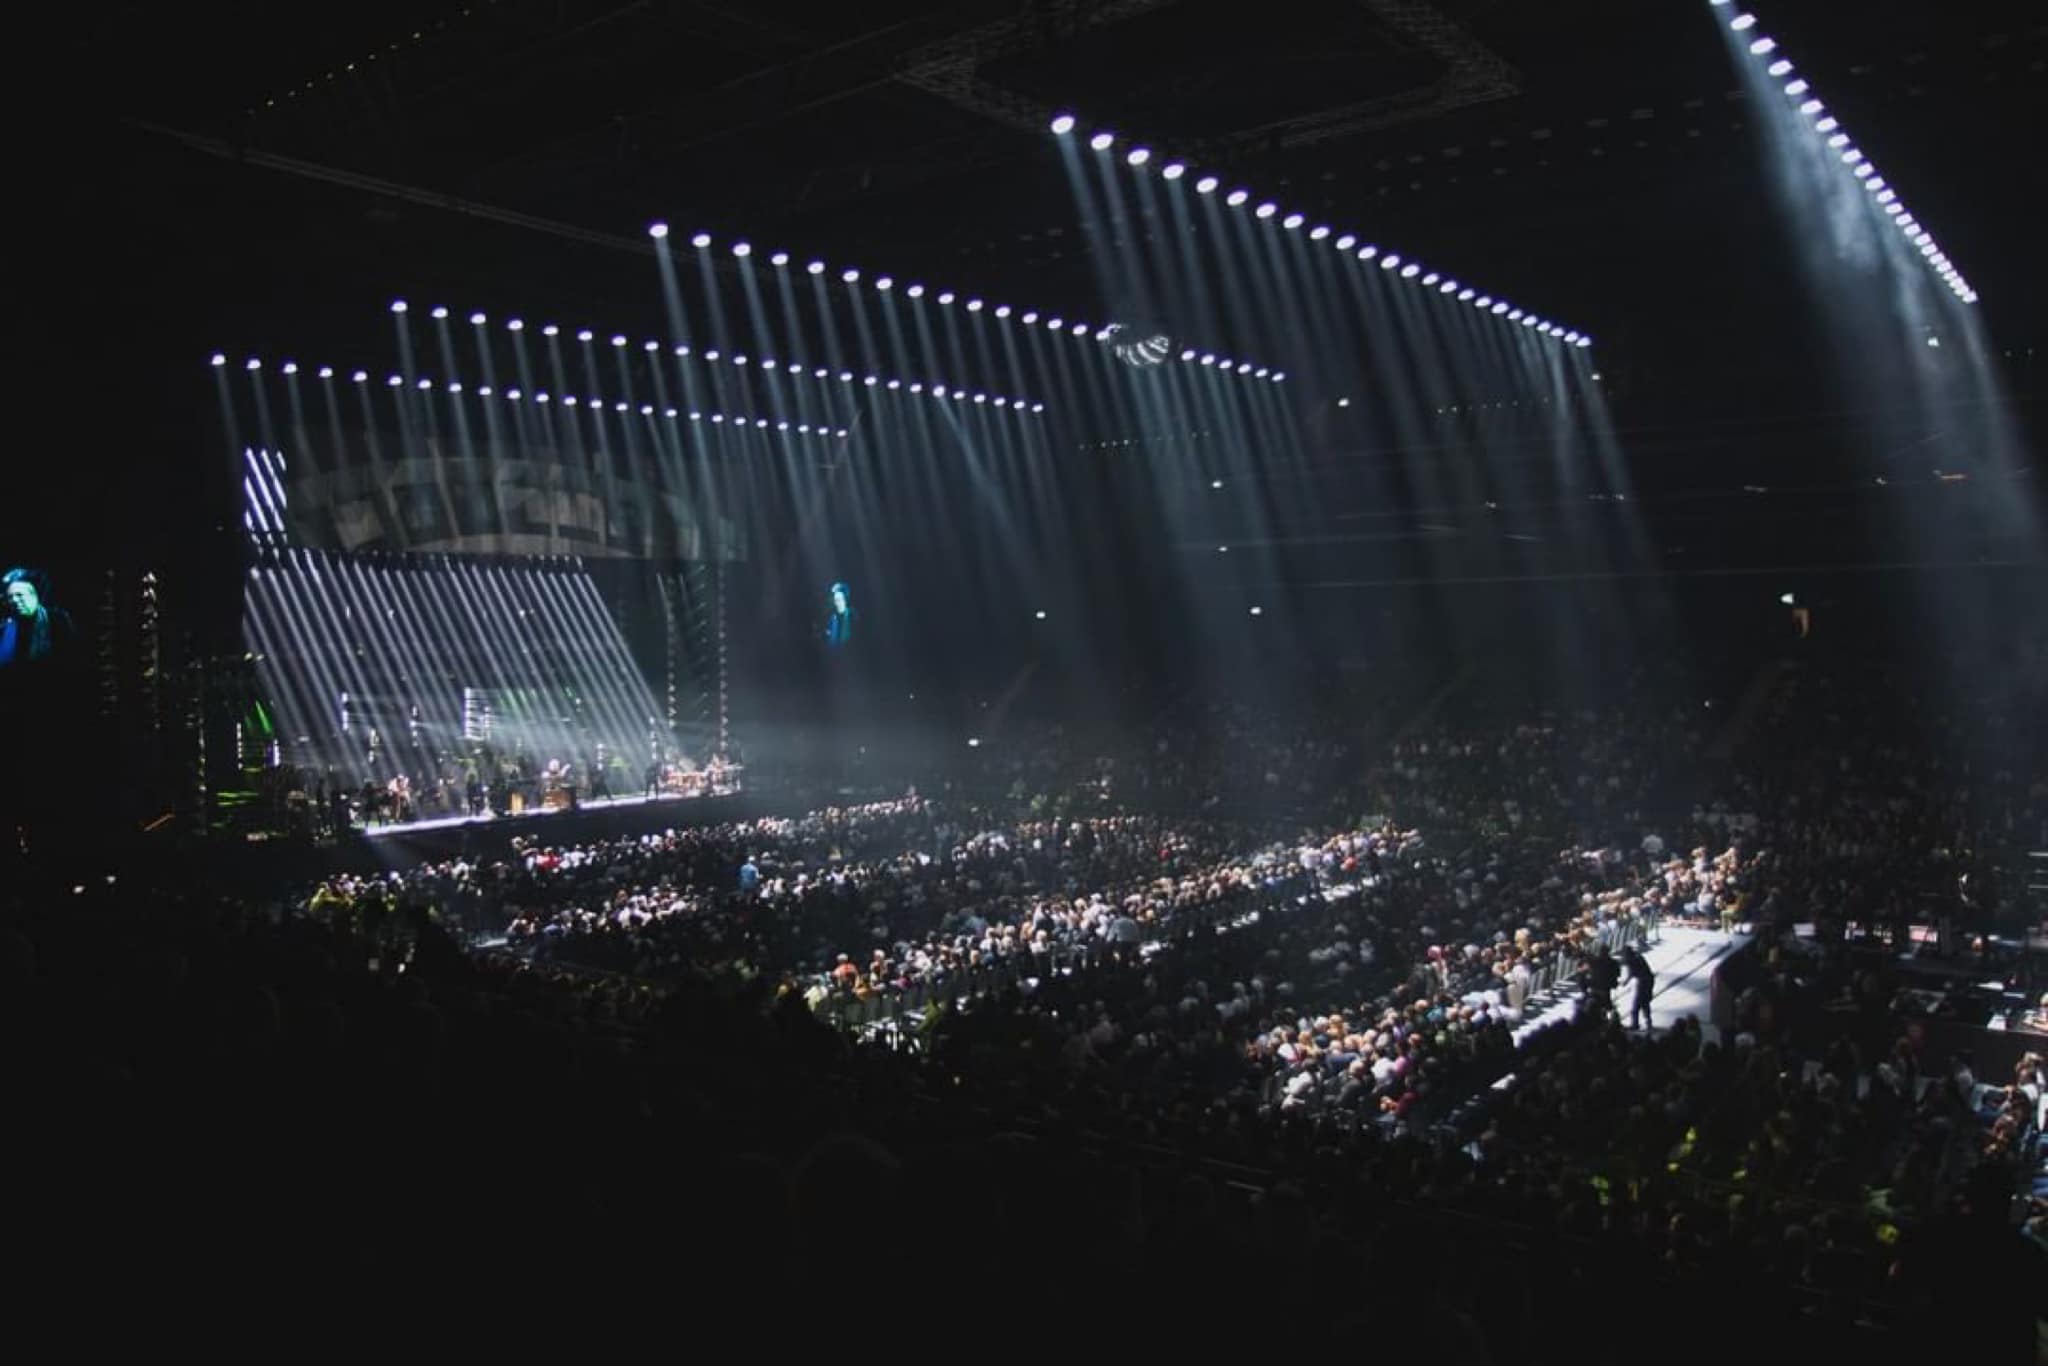 PRG a fourni l'éclairage, le gréement et le système d'automatisation du spectacle pour Hans Zimmer Live.